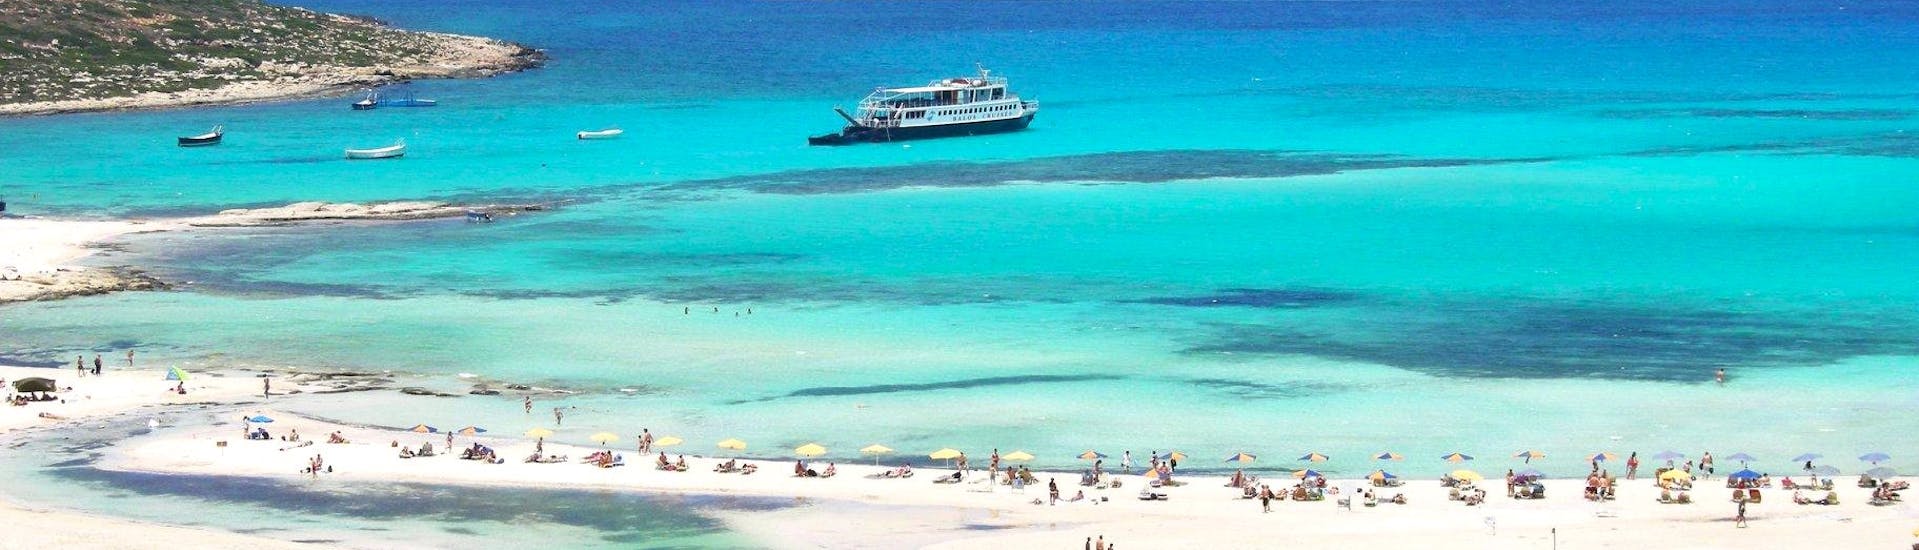 Le magnifique lagon à Balos lors d'une excursion en bateau à Balos et Gramvousa depuis Kissamos, avec Cretan Daily Cruises.